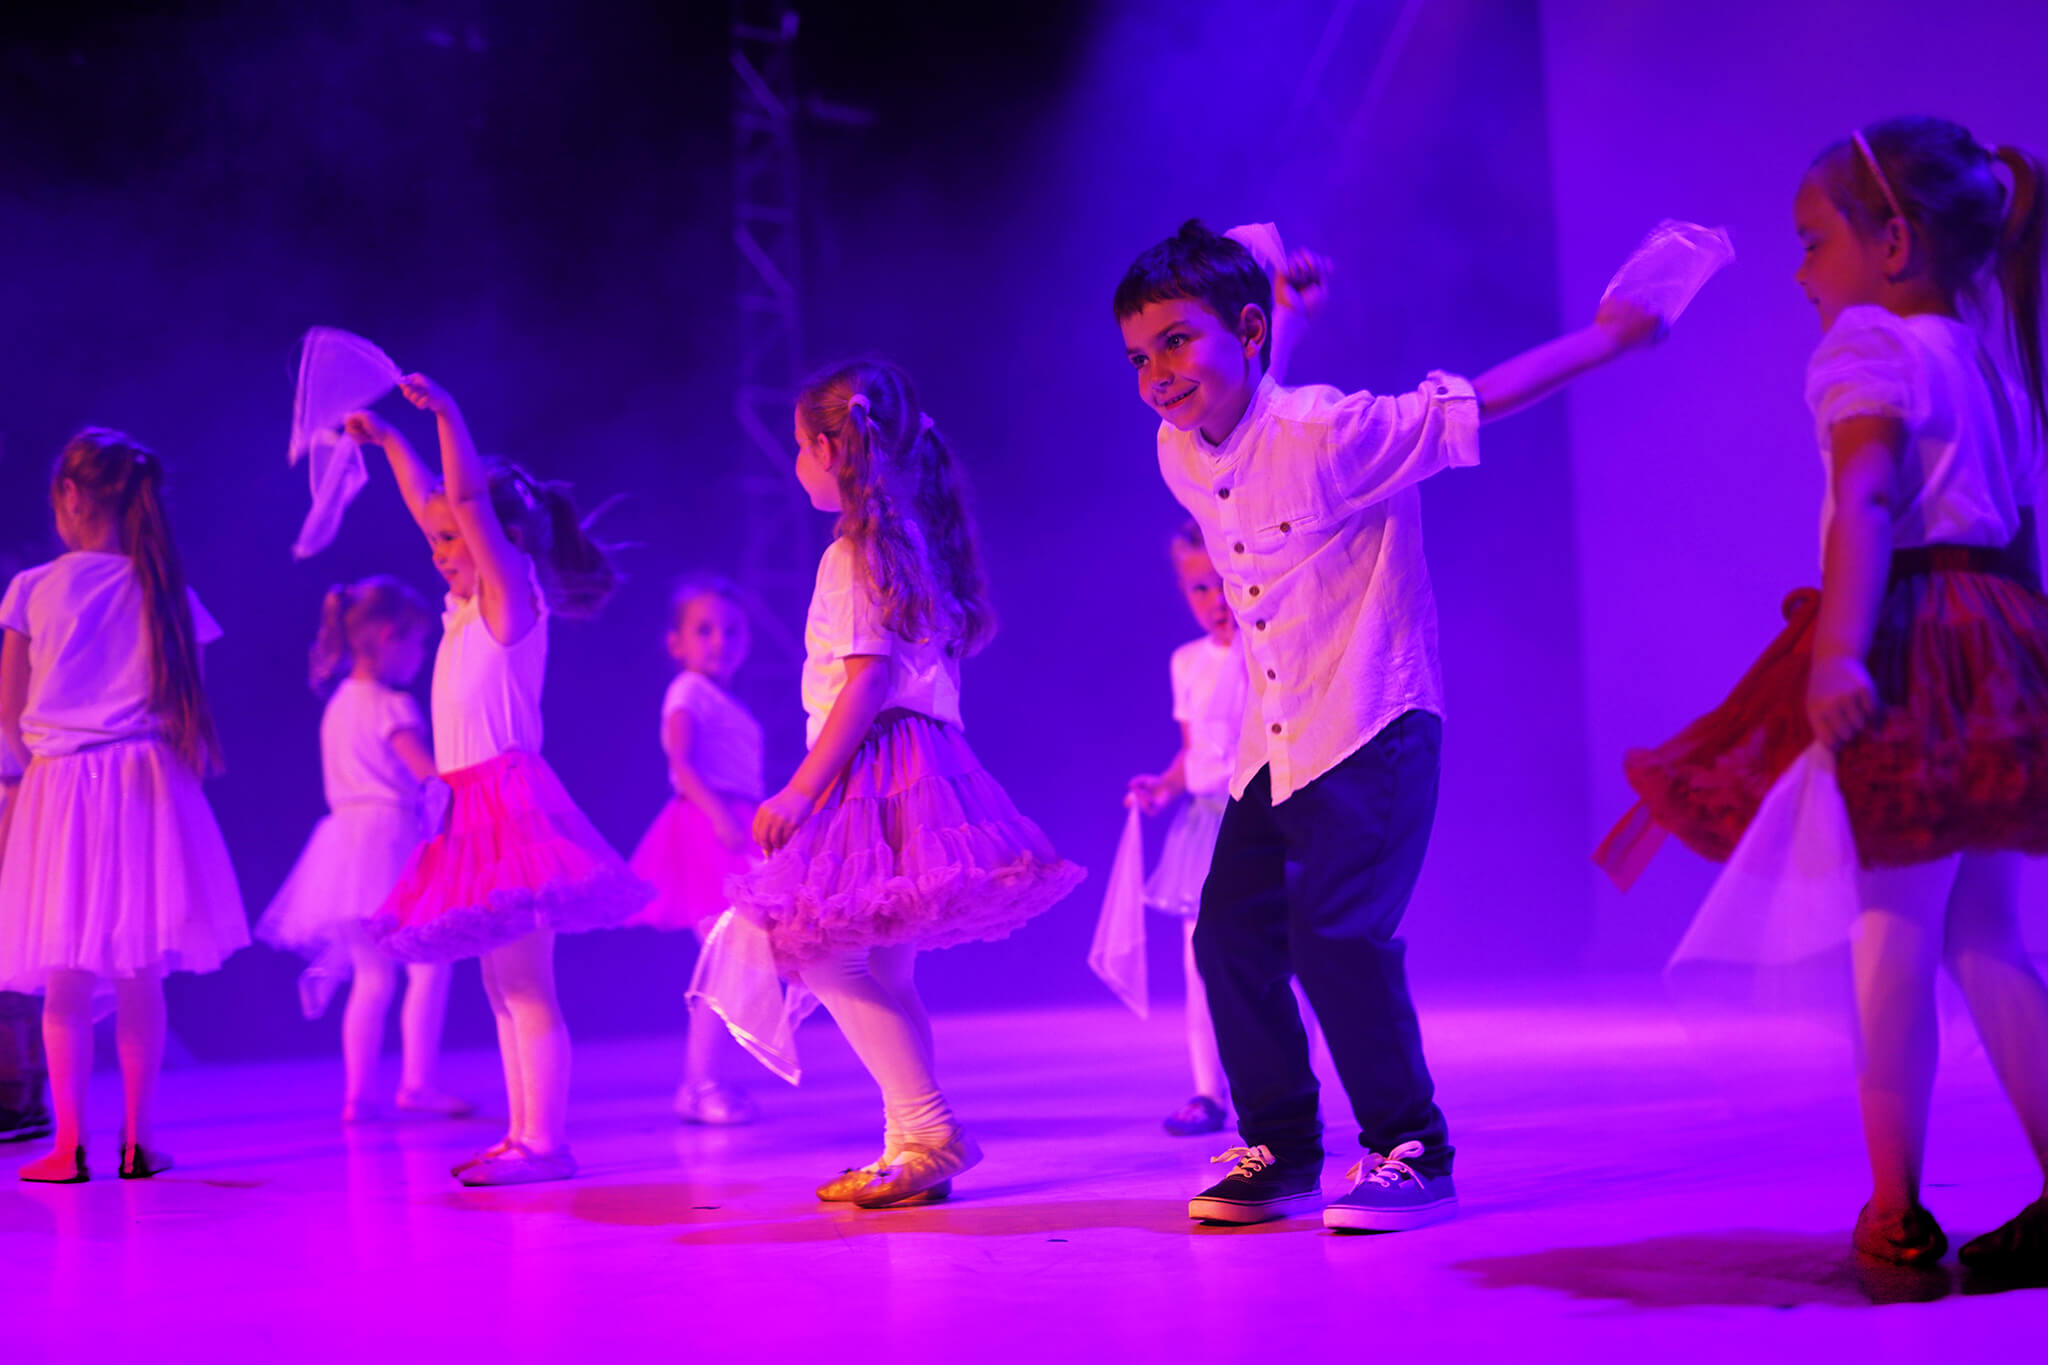 Grupa dzieci w wieku przedszkolnym tańczy z chustami na scenie.